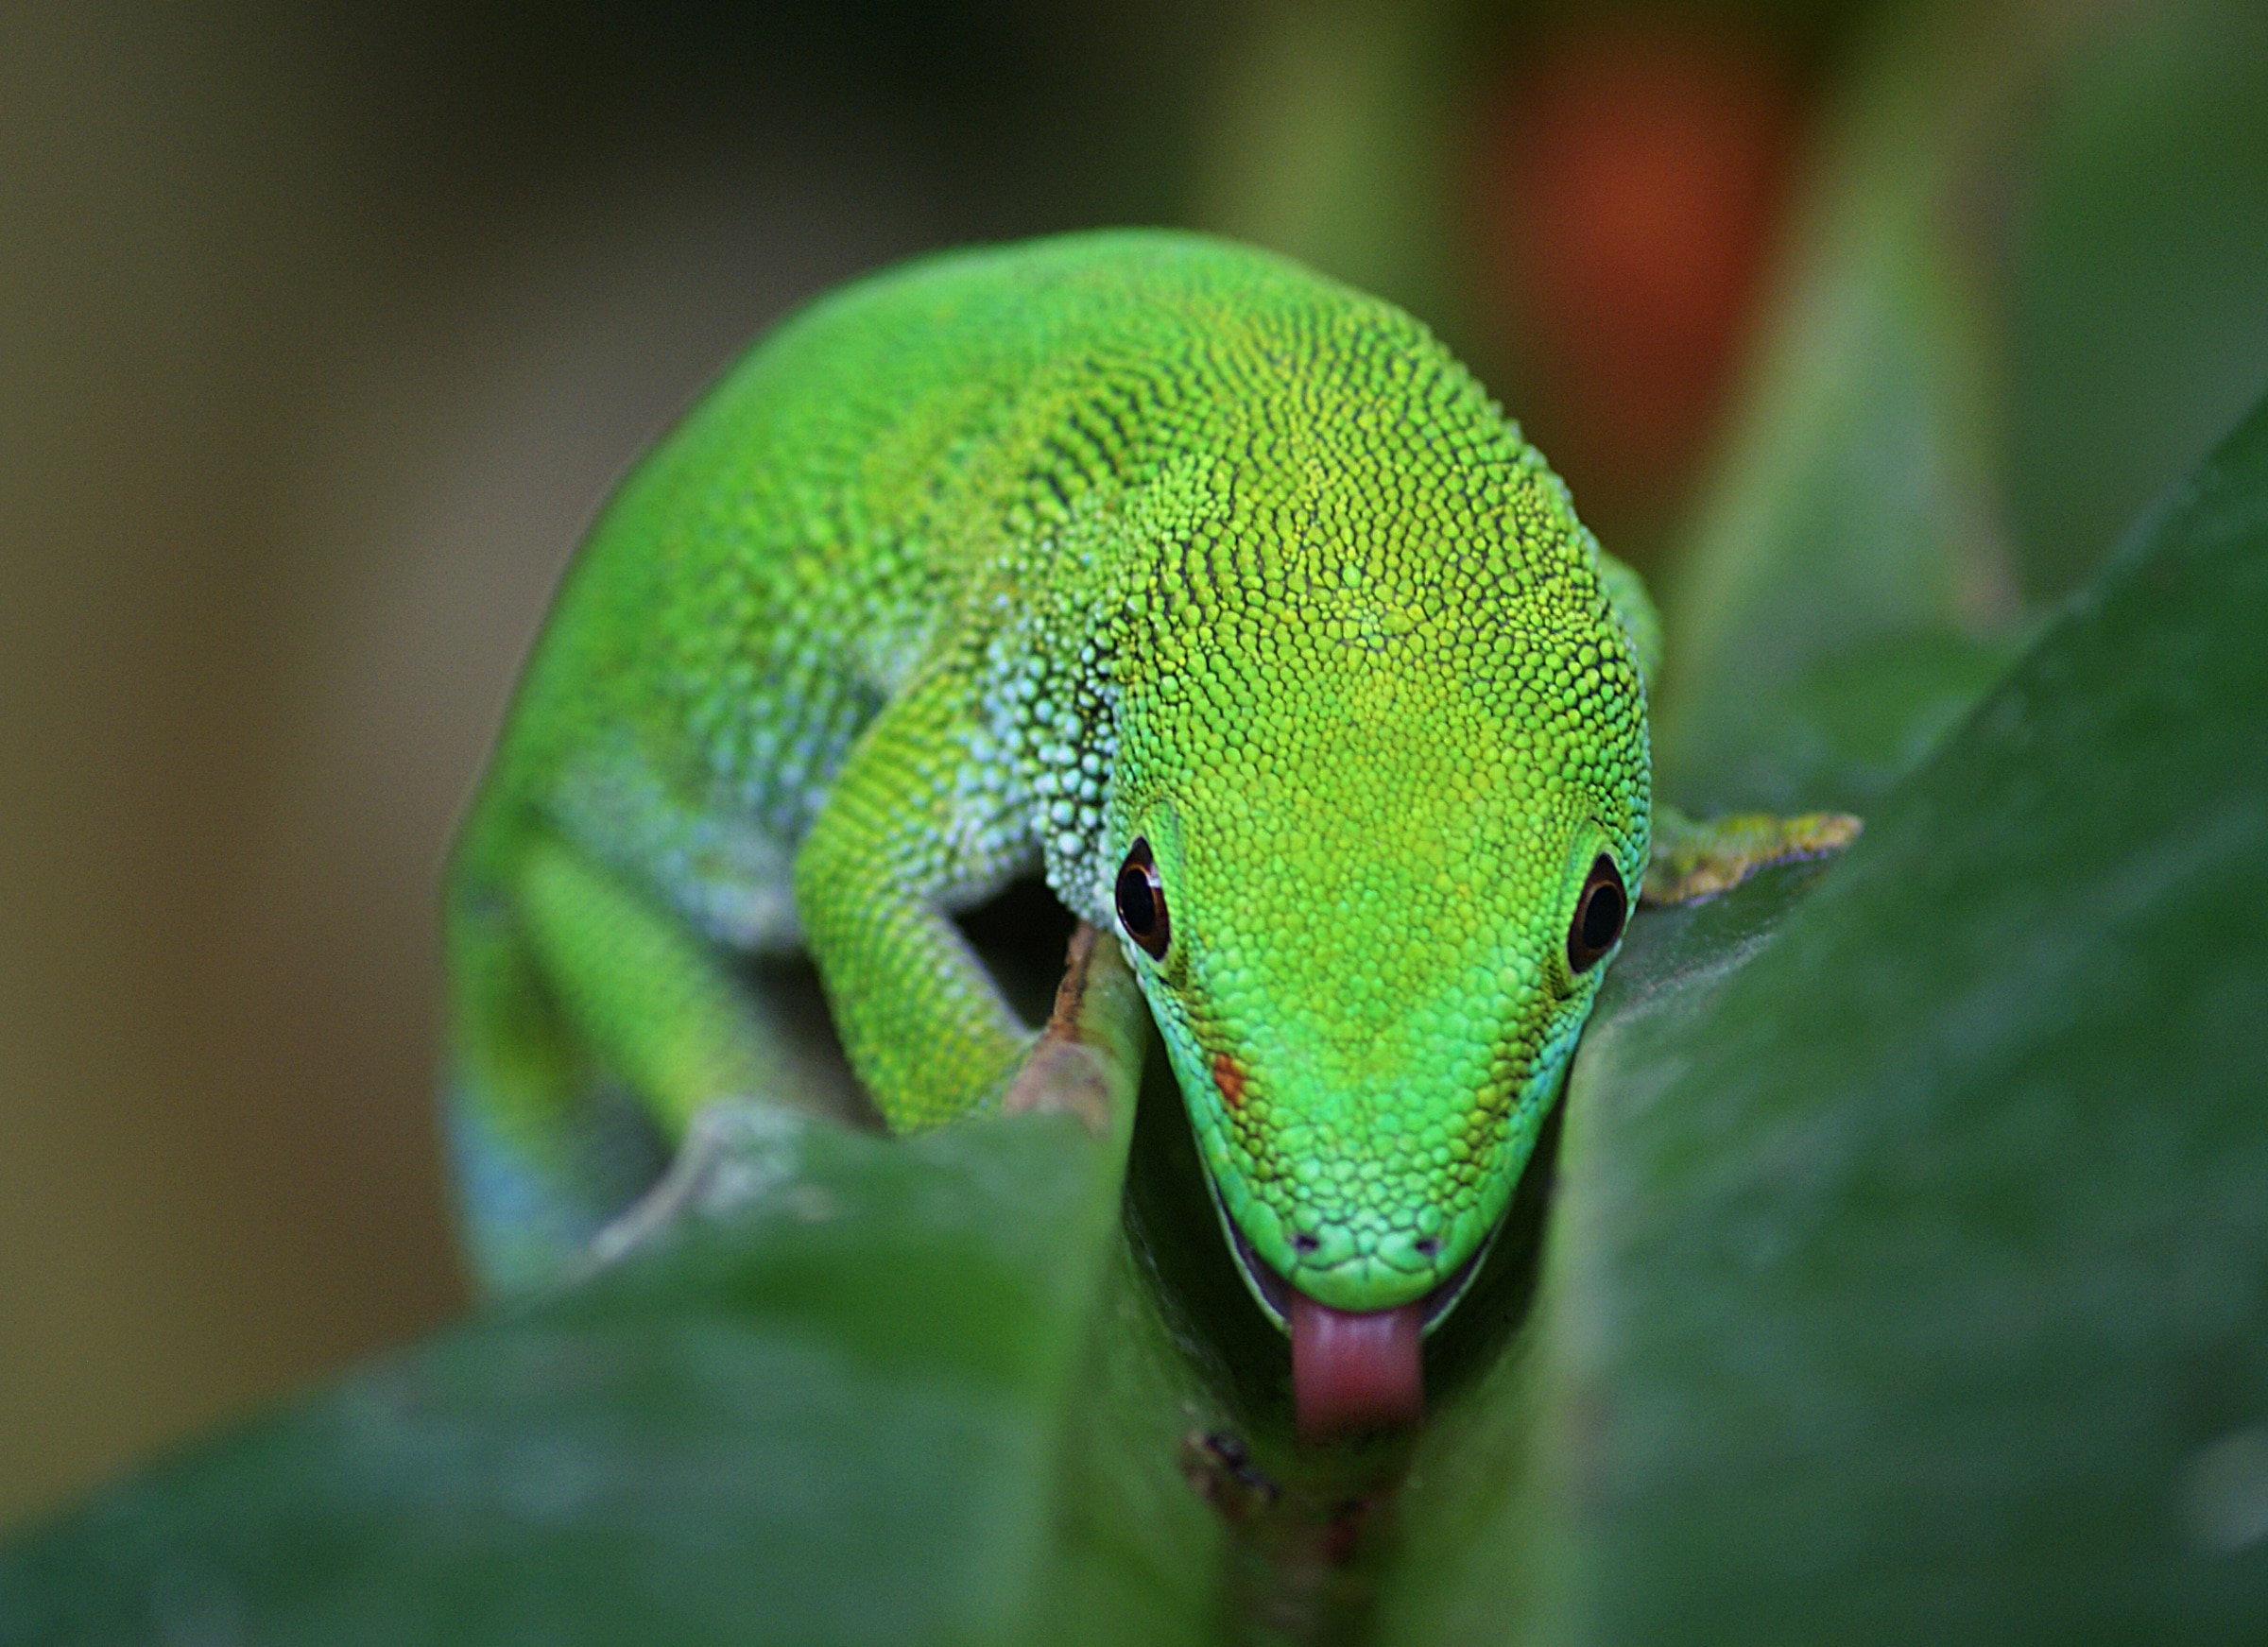 Madagascan Day Gecko, Green Lizard - Day Gecko , HD Wallpaper & Backgrounds